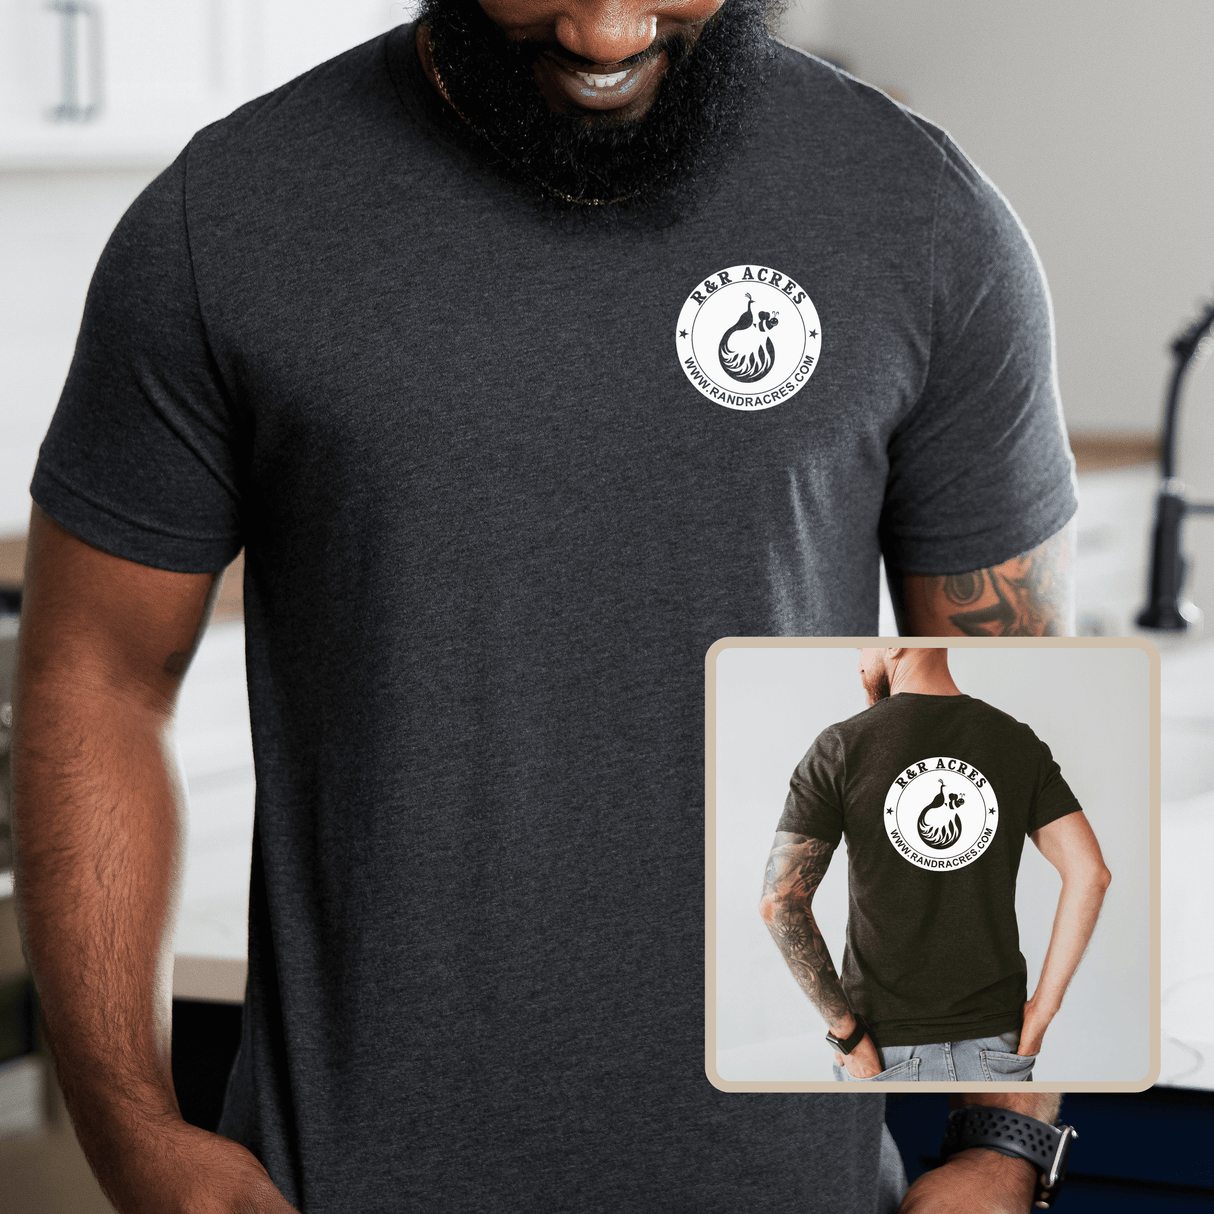 R & R Short Sleeve T-shirt - Pocket/Full Back Design T-shirt Winks Design Studio,LLC